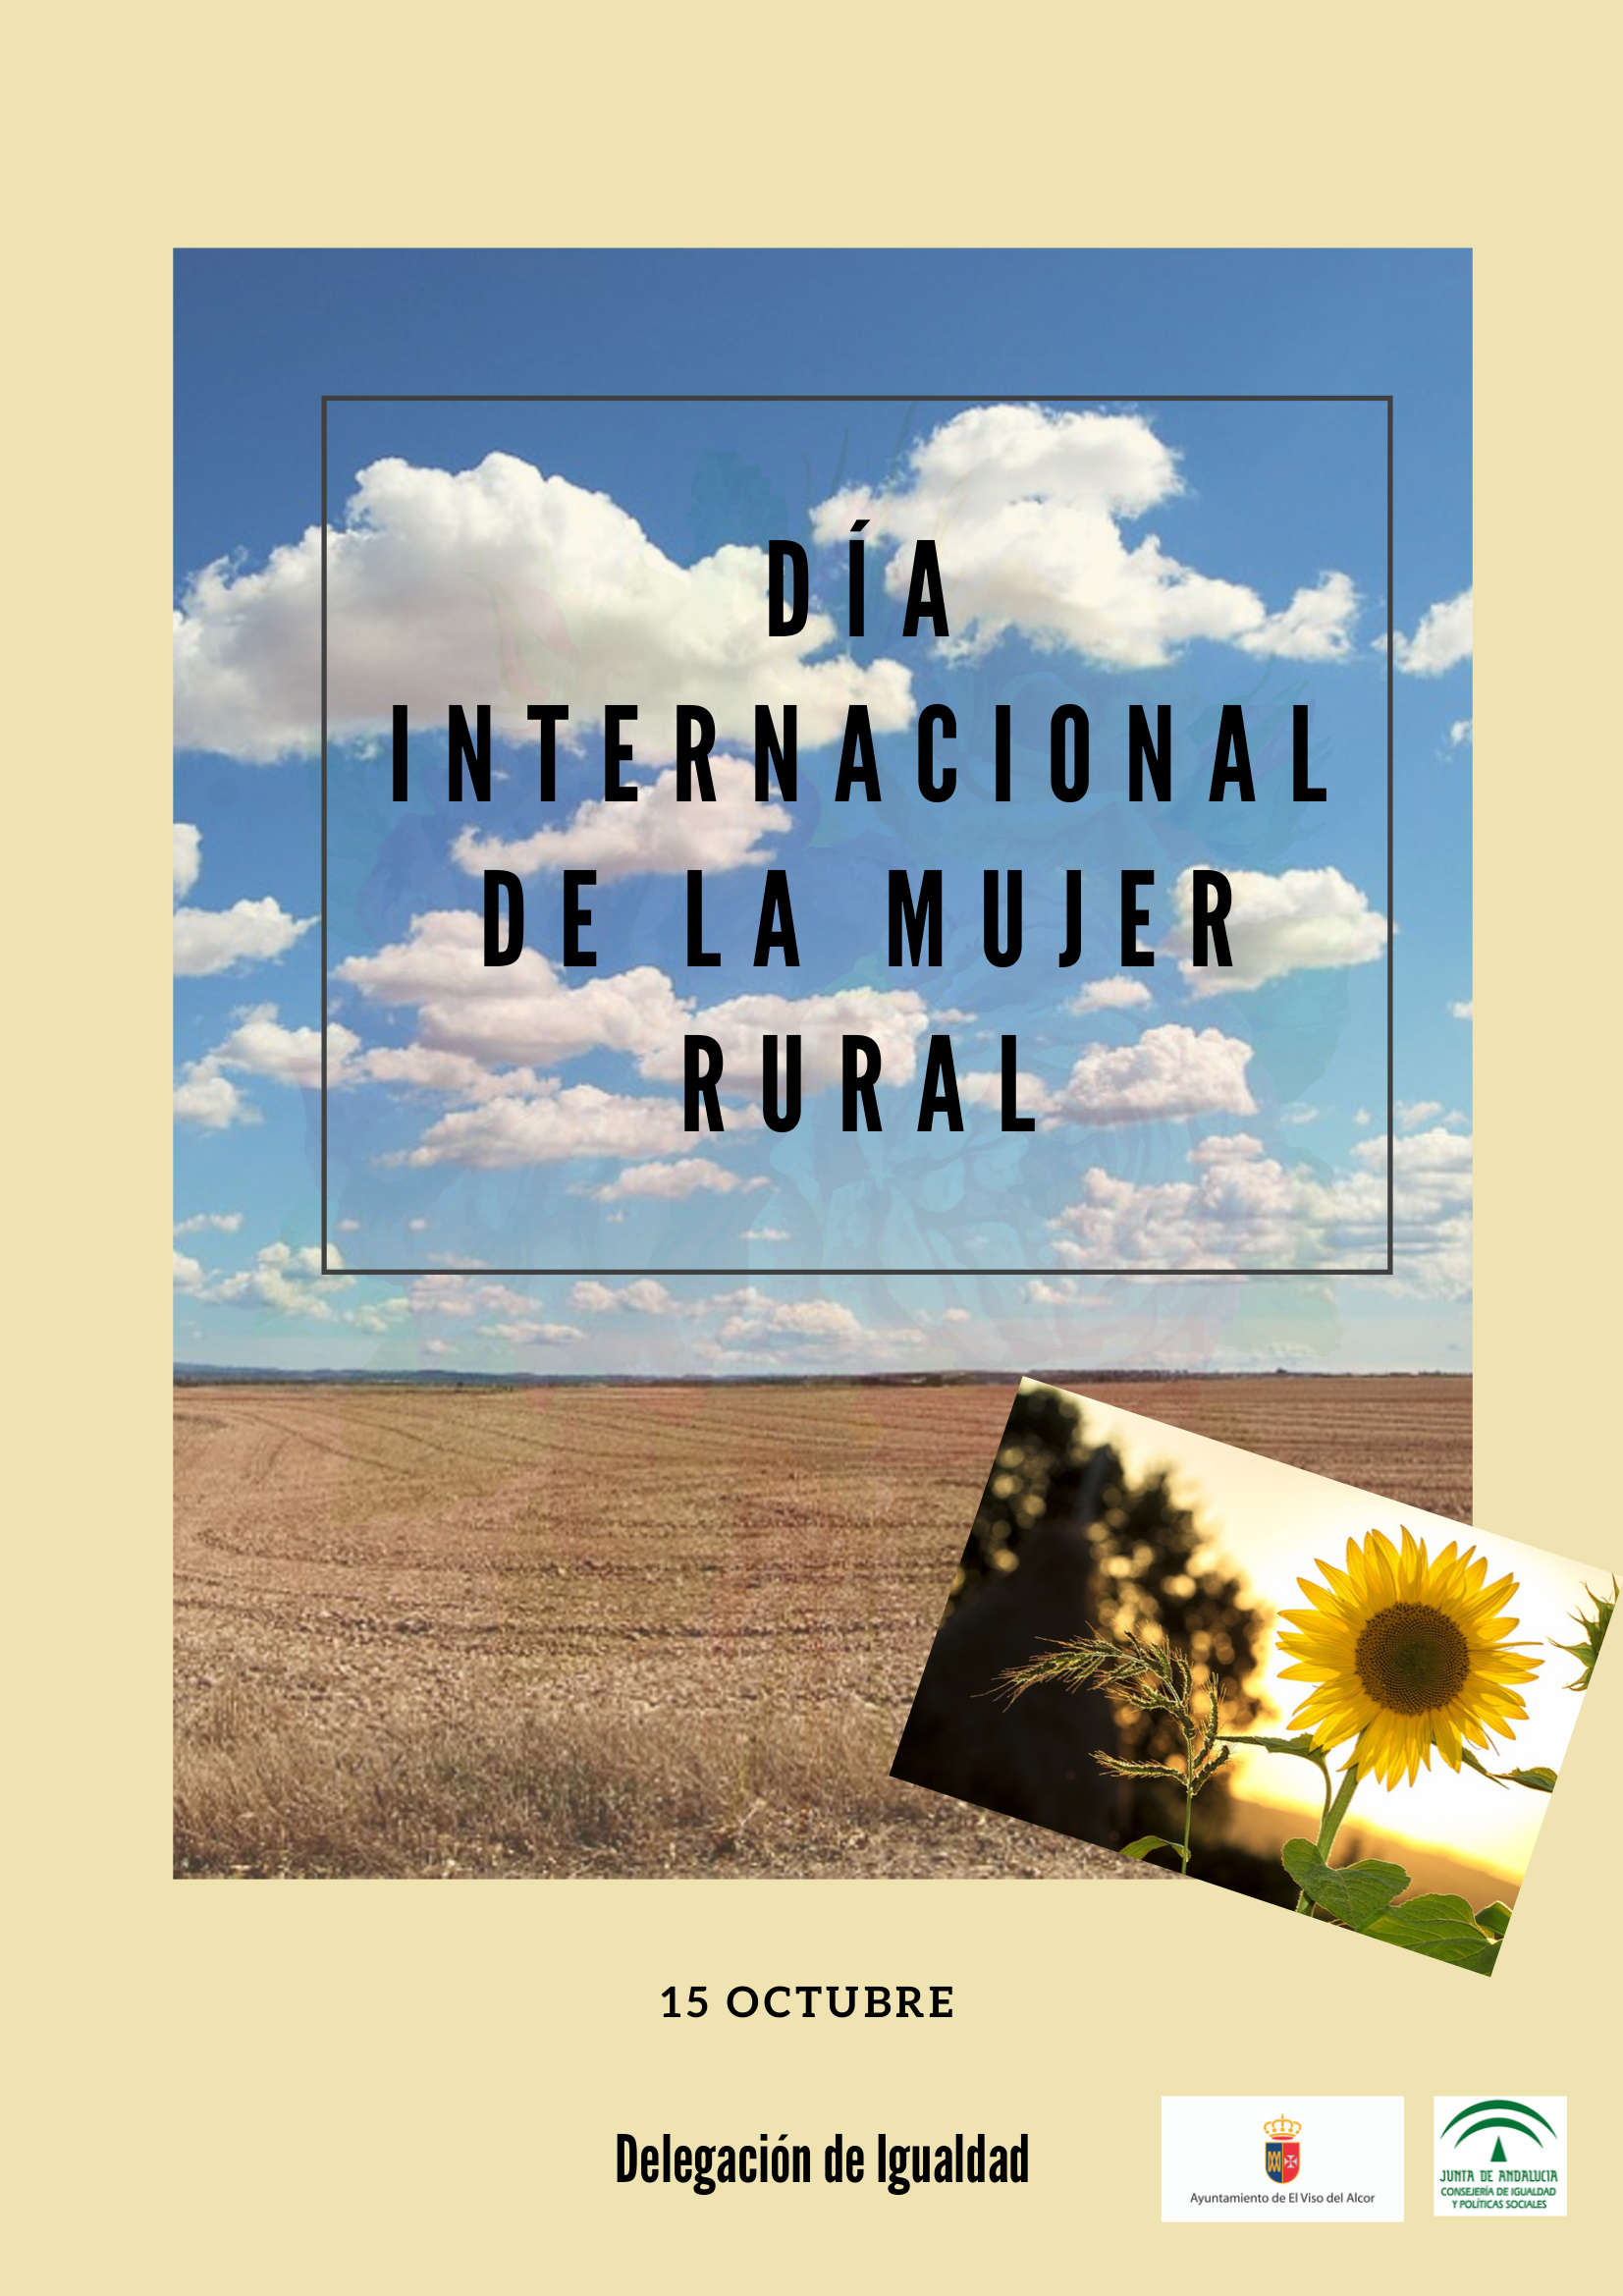 Día Internacional de la mujer rural